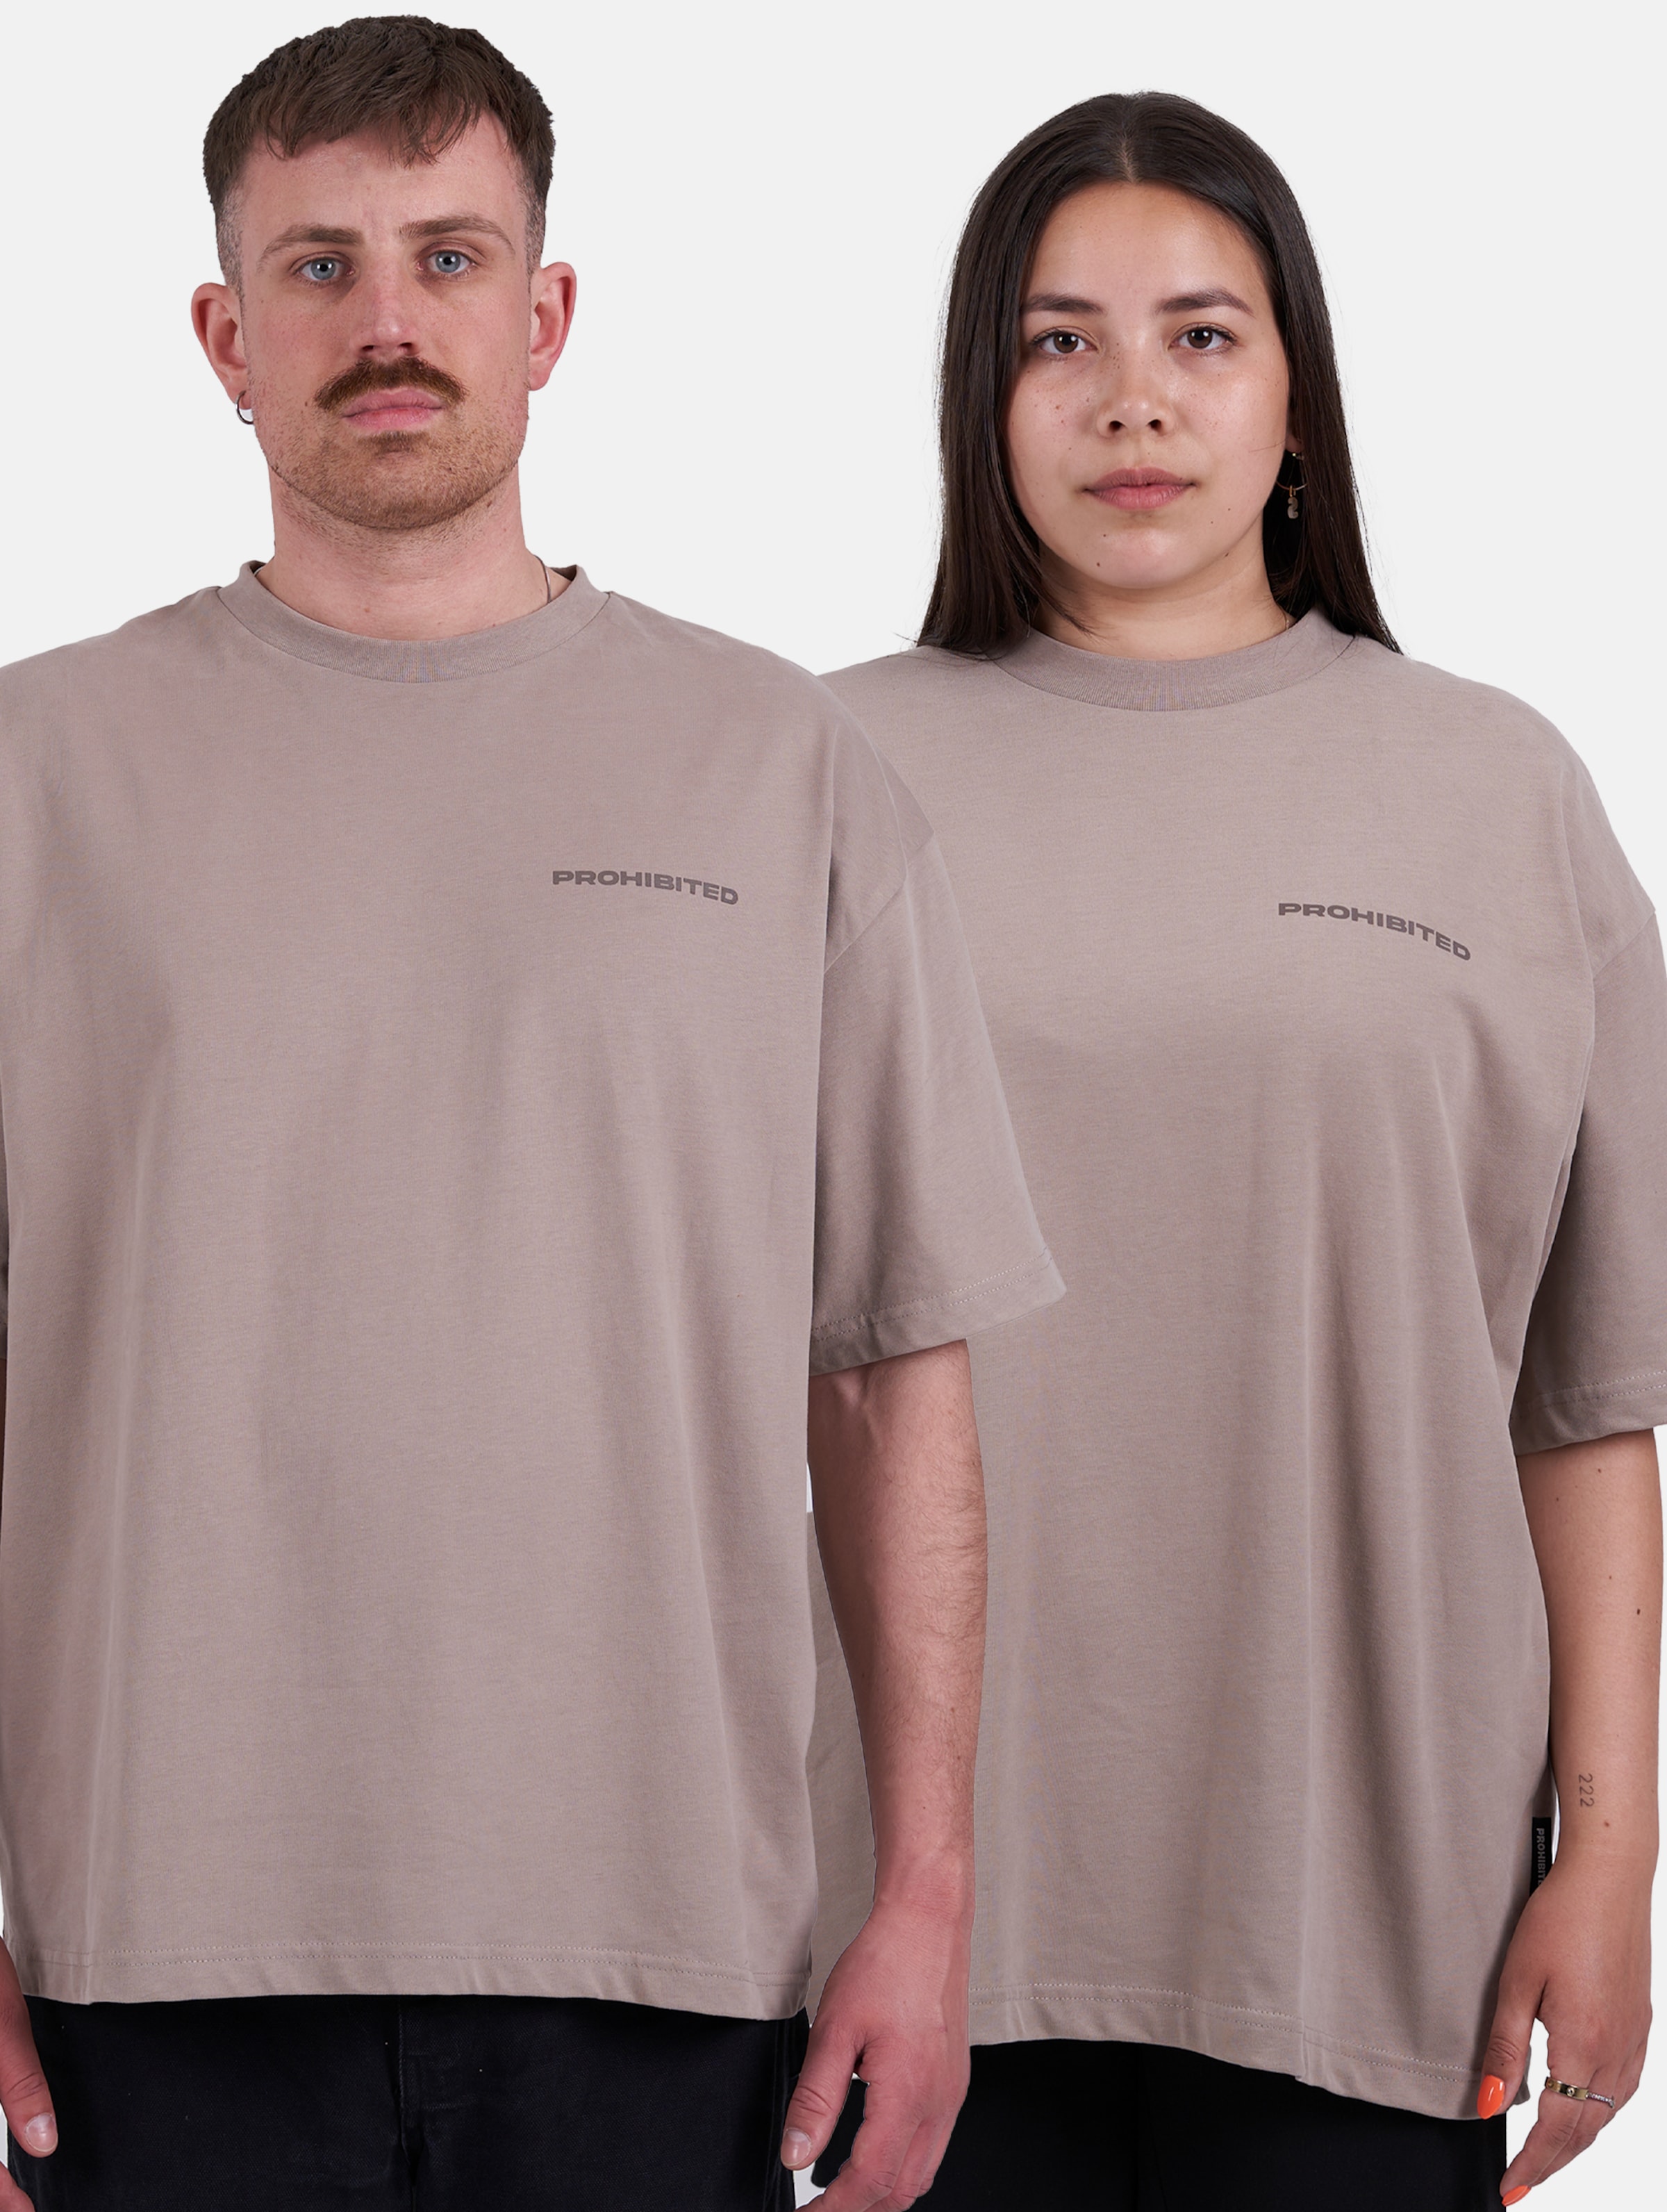 Prohibited T-Shirts Frauen,Männer,Unisex op kleur bruin, Maat M